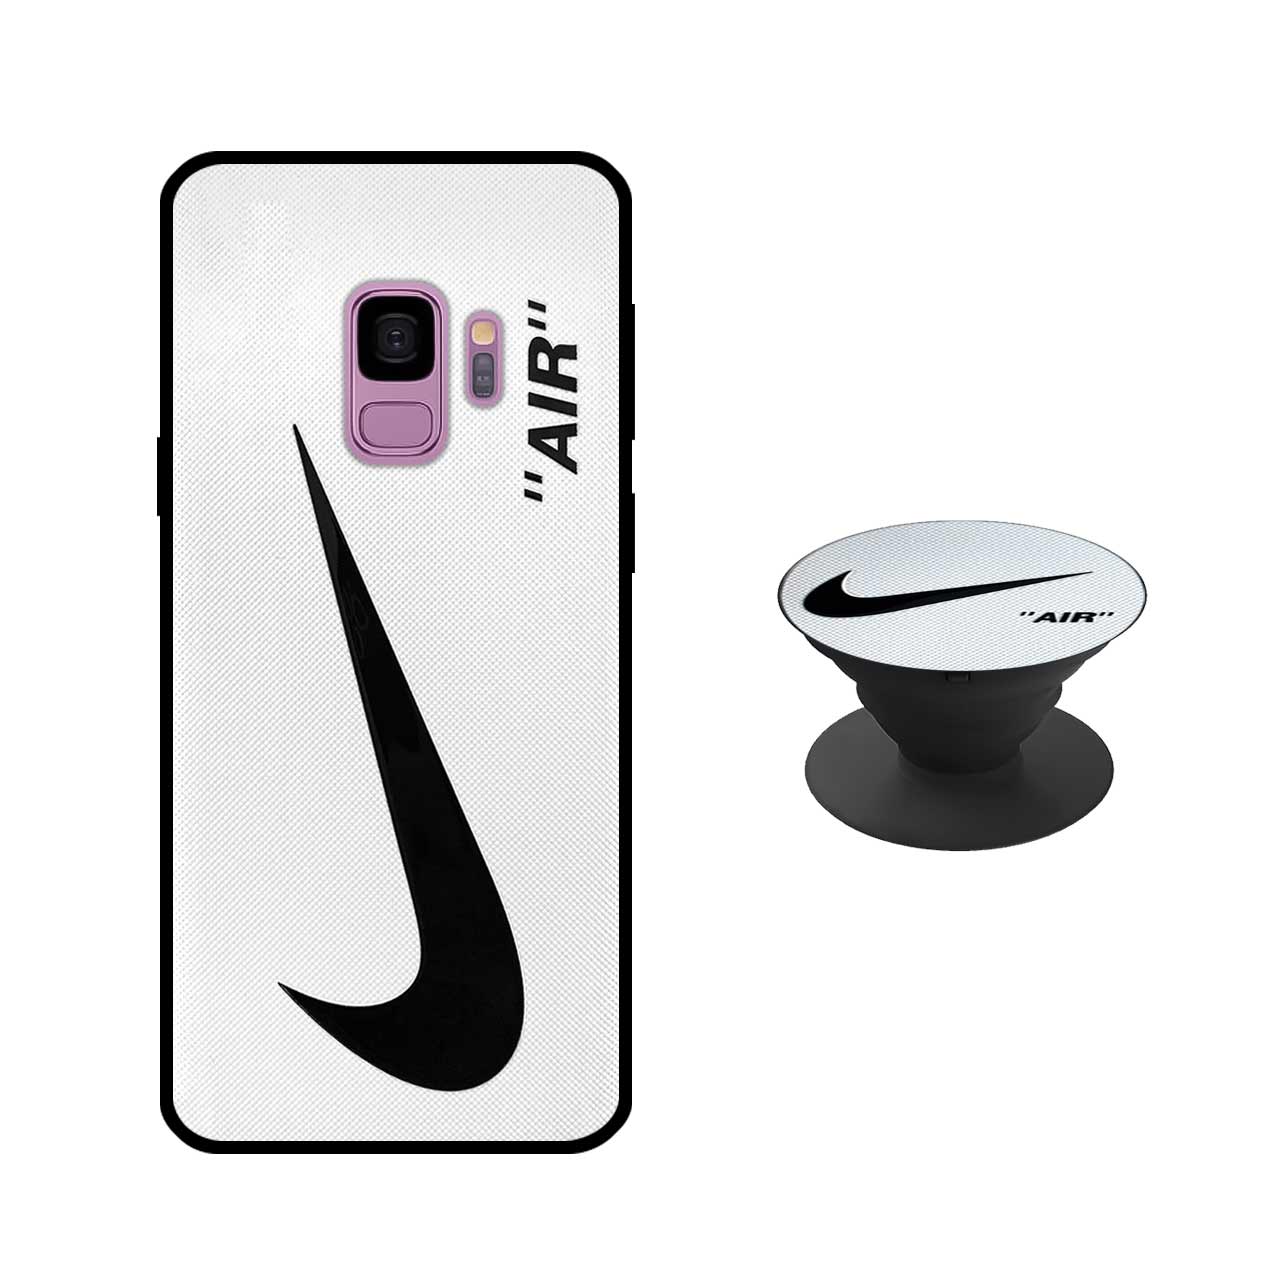 کاور دکین مدل Rikki طرح Air - W مناسب برای گوشی موبایل سامسونگ Galaxy S9 به همراه پاپ سوکت